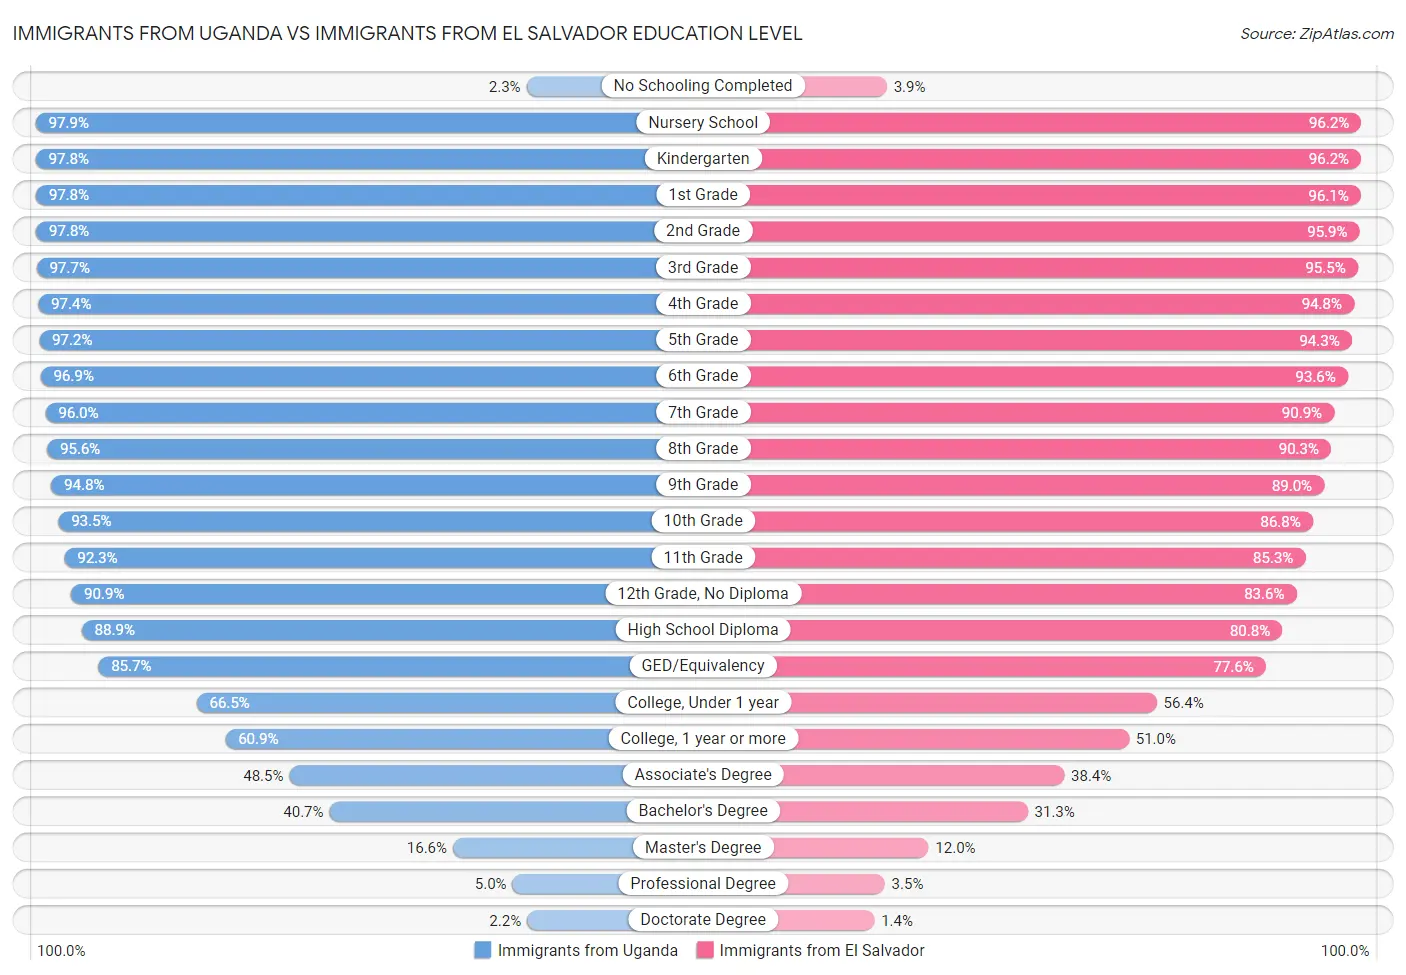 Immigrants from Uganda vs Immigrants from El Salvador Education Level